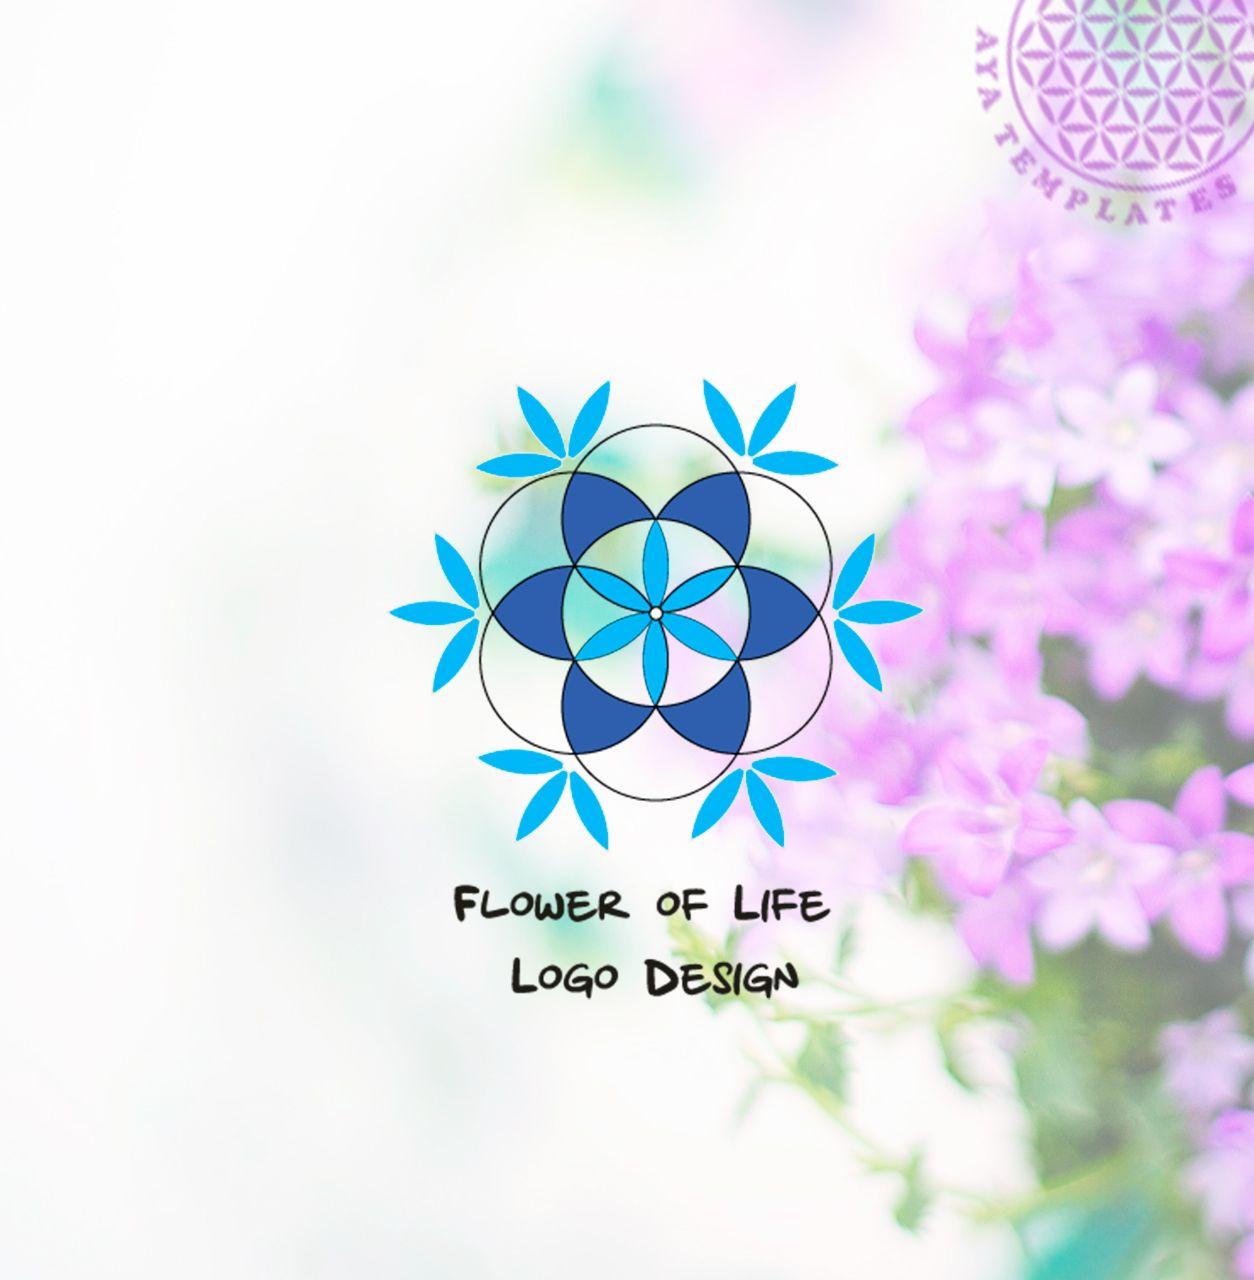 Flower of Life Logo - Flower of Life Logo Design